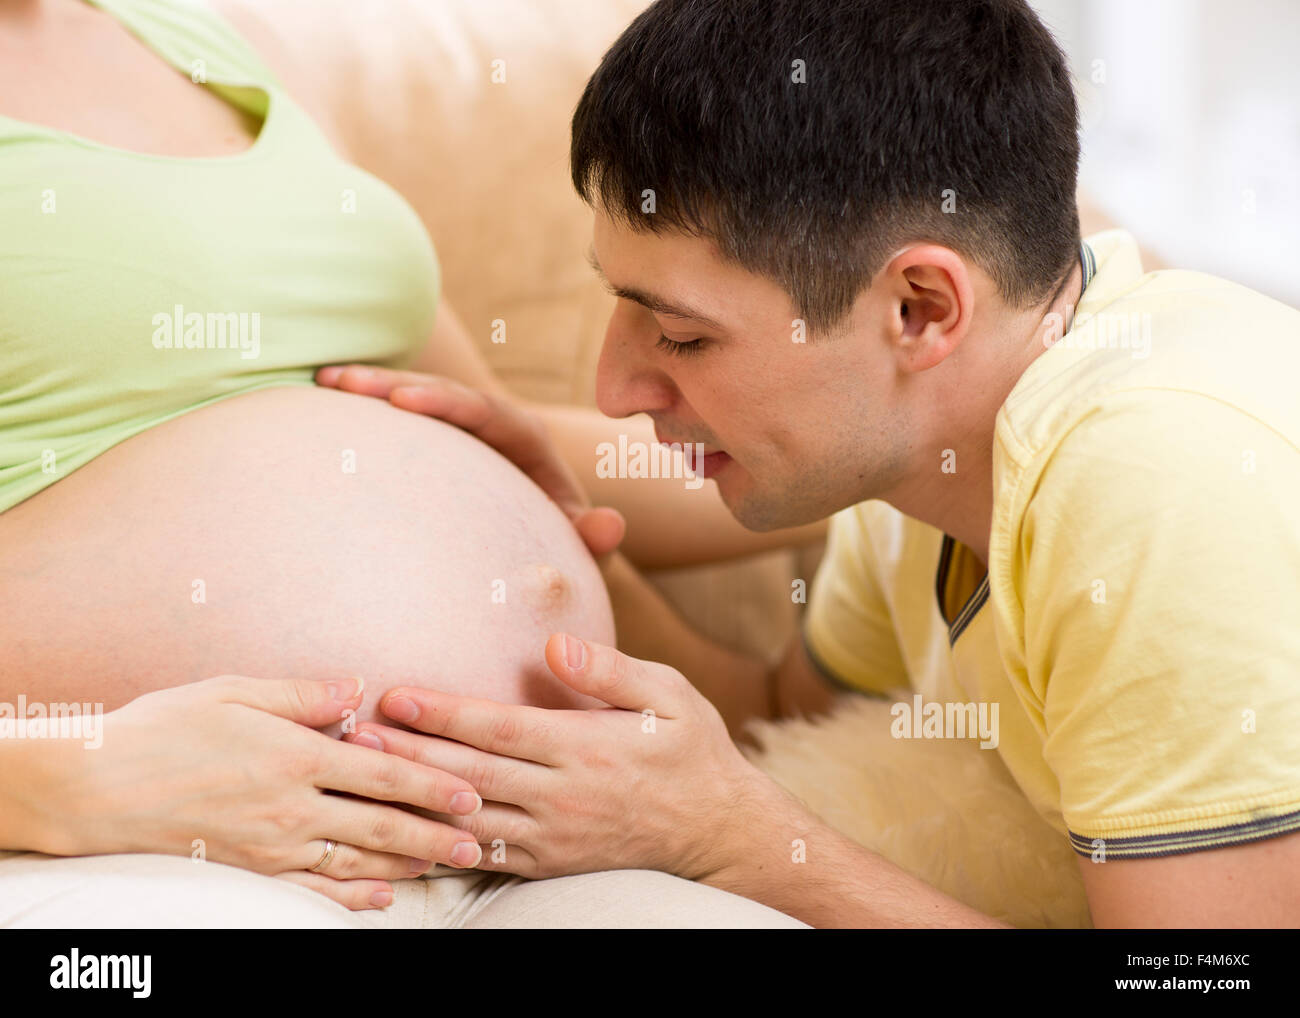 Zukünftige Vater betrachtet man schwangeren Bauch seiner schwangeren Frau Stockfoto